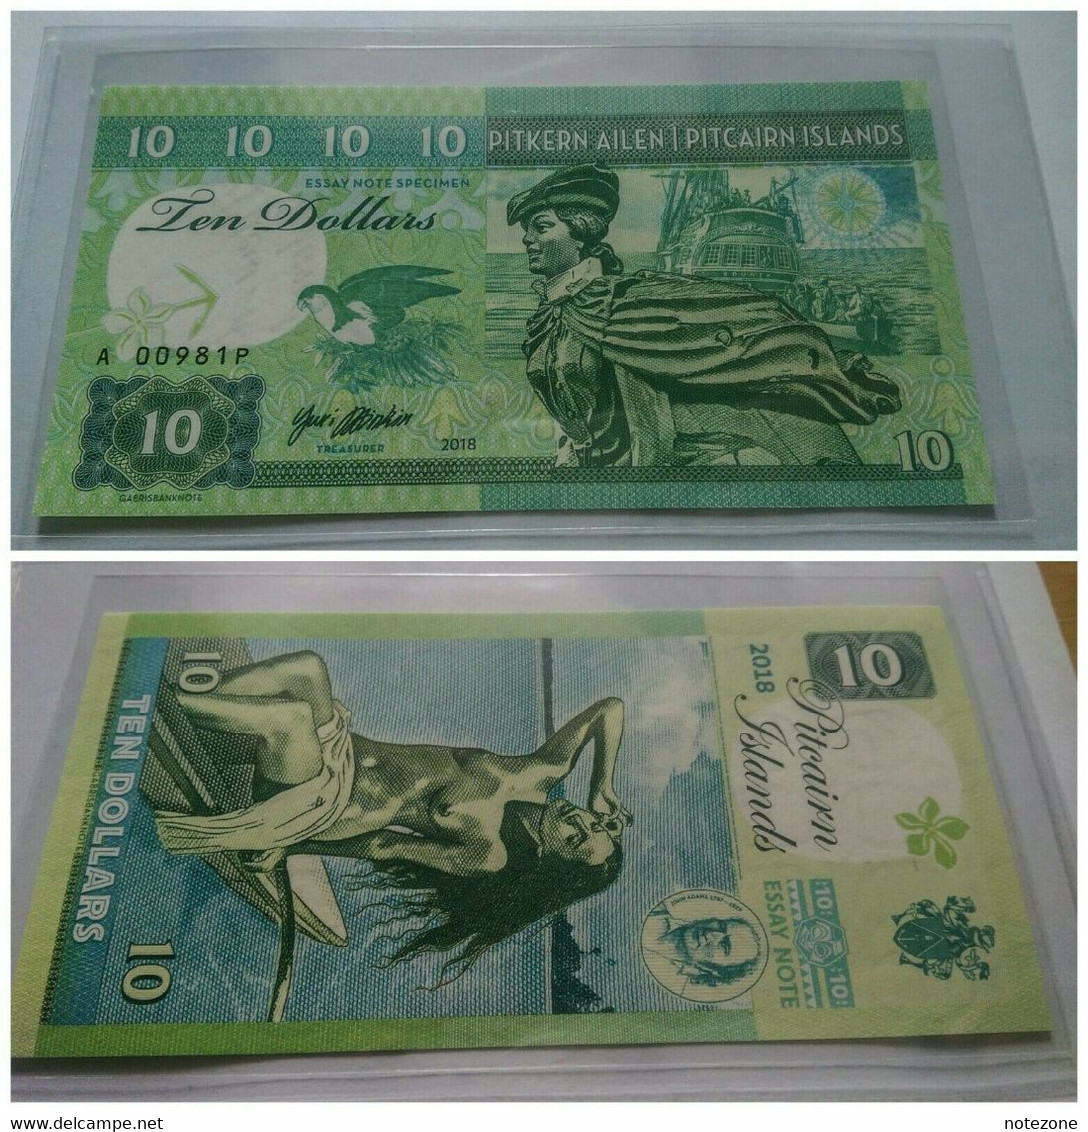 Matej Gabris $10 Pitcairn Islands Banknote Private Fantasy Test - Serie Da Collezione